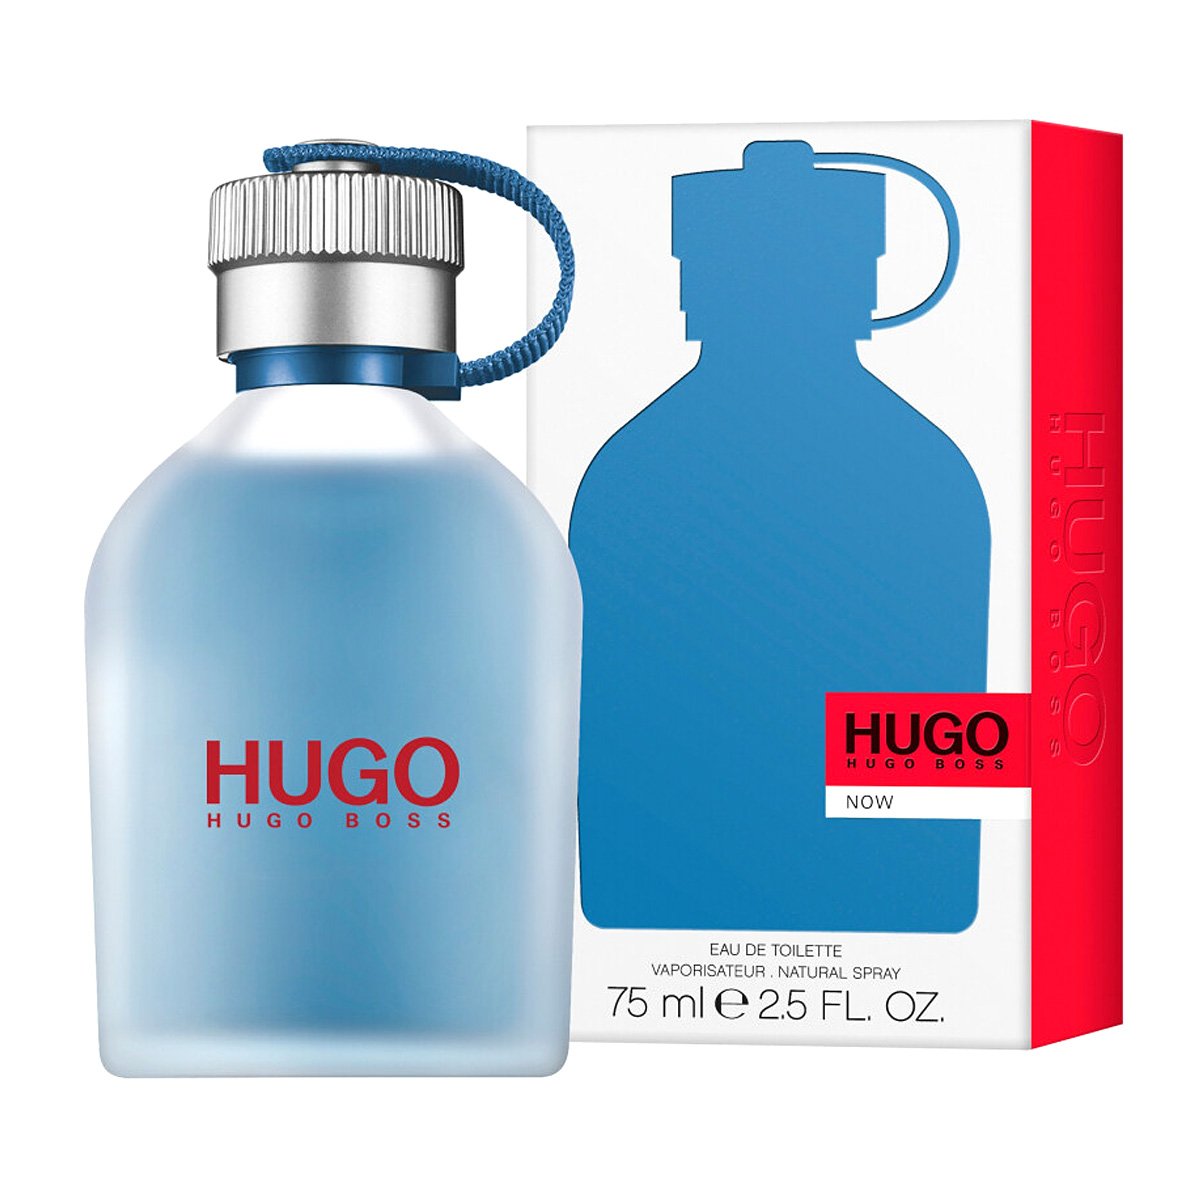 Hugo мужская туалетная вода. Hugo Boss Now 75ml. Hugo Boss Hugo Now [m] EDT - 75ml. Boss Hugo Boss man EDT 125ml (m). Hugo Boss мужской Hugo туалетная вода (EDT) 75мл.